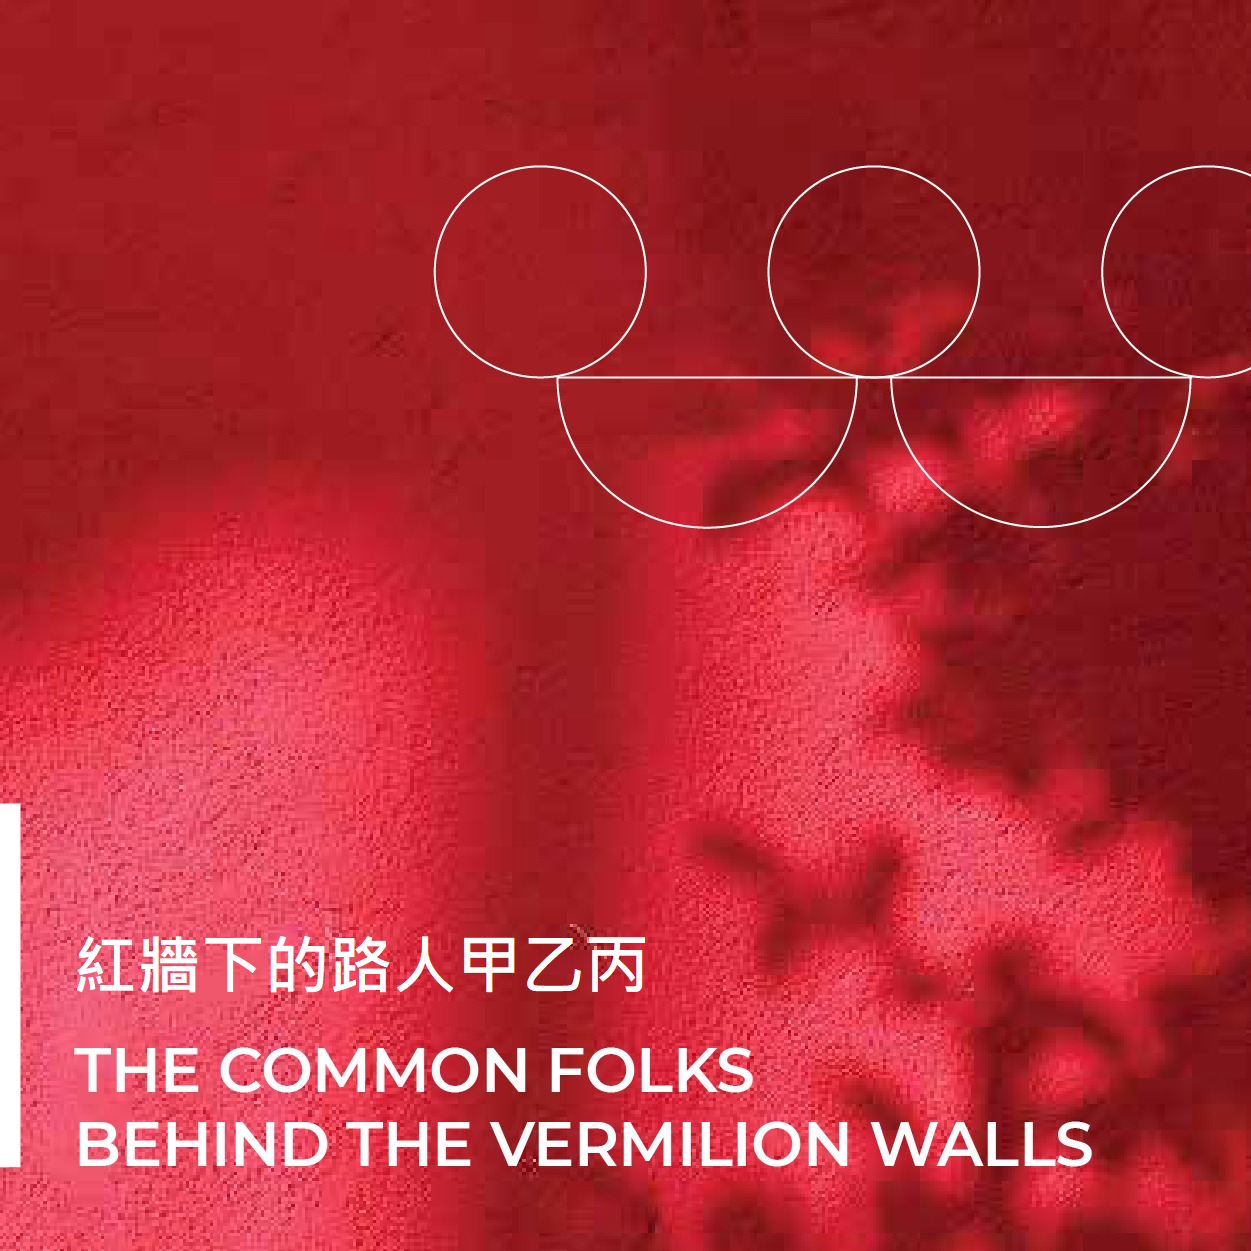 「穿越紫禁城 ─ 紅牆下的路人甲乙丙」網上展覽